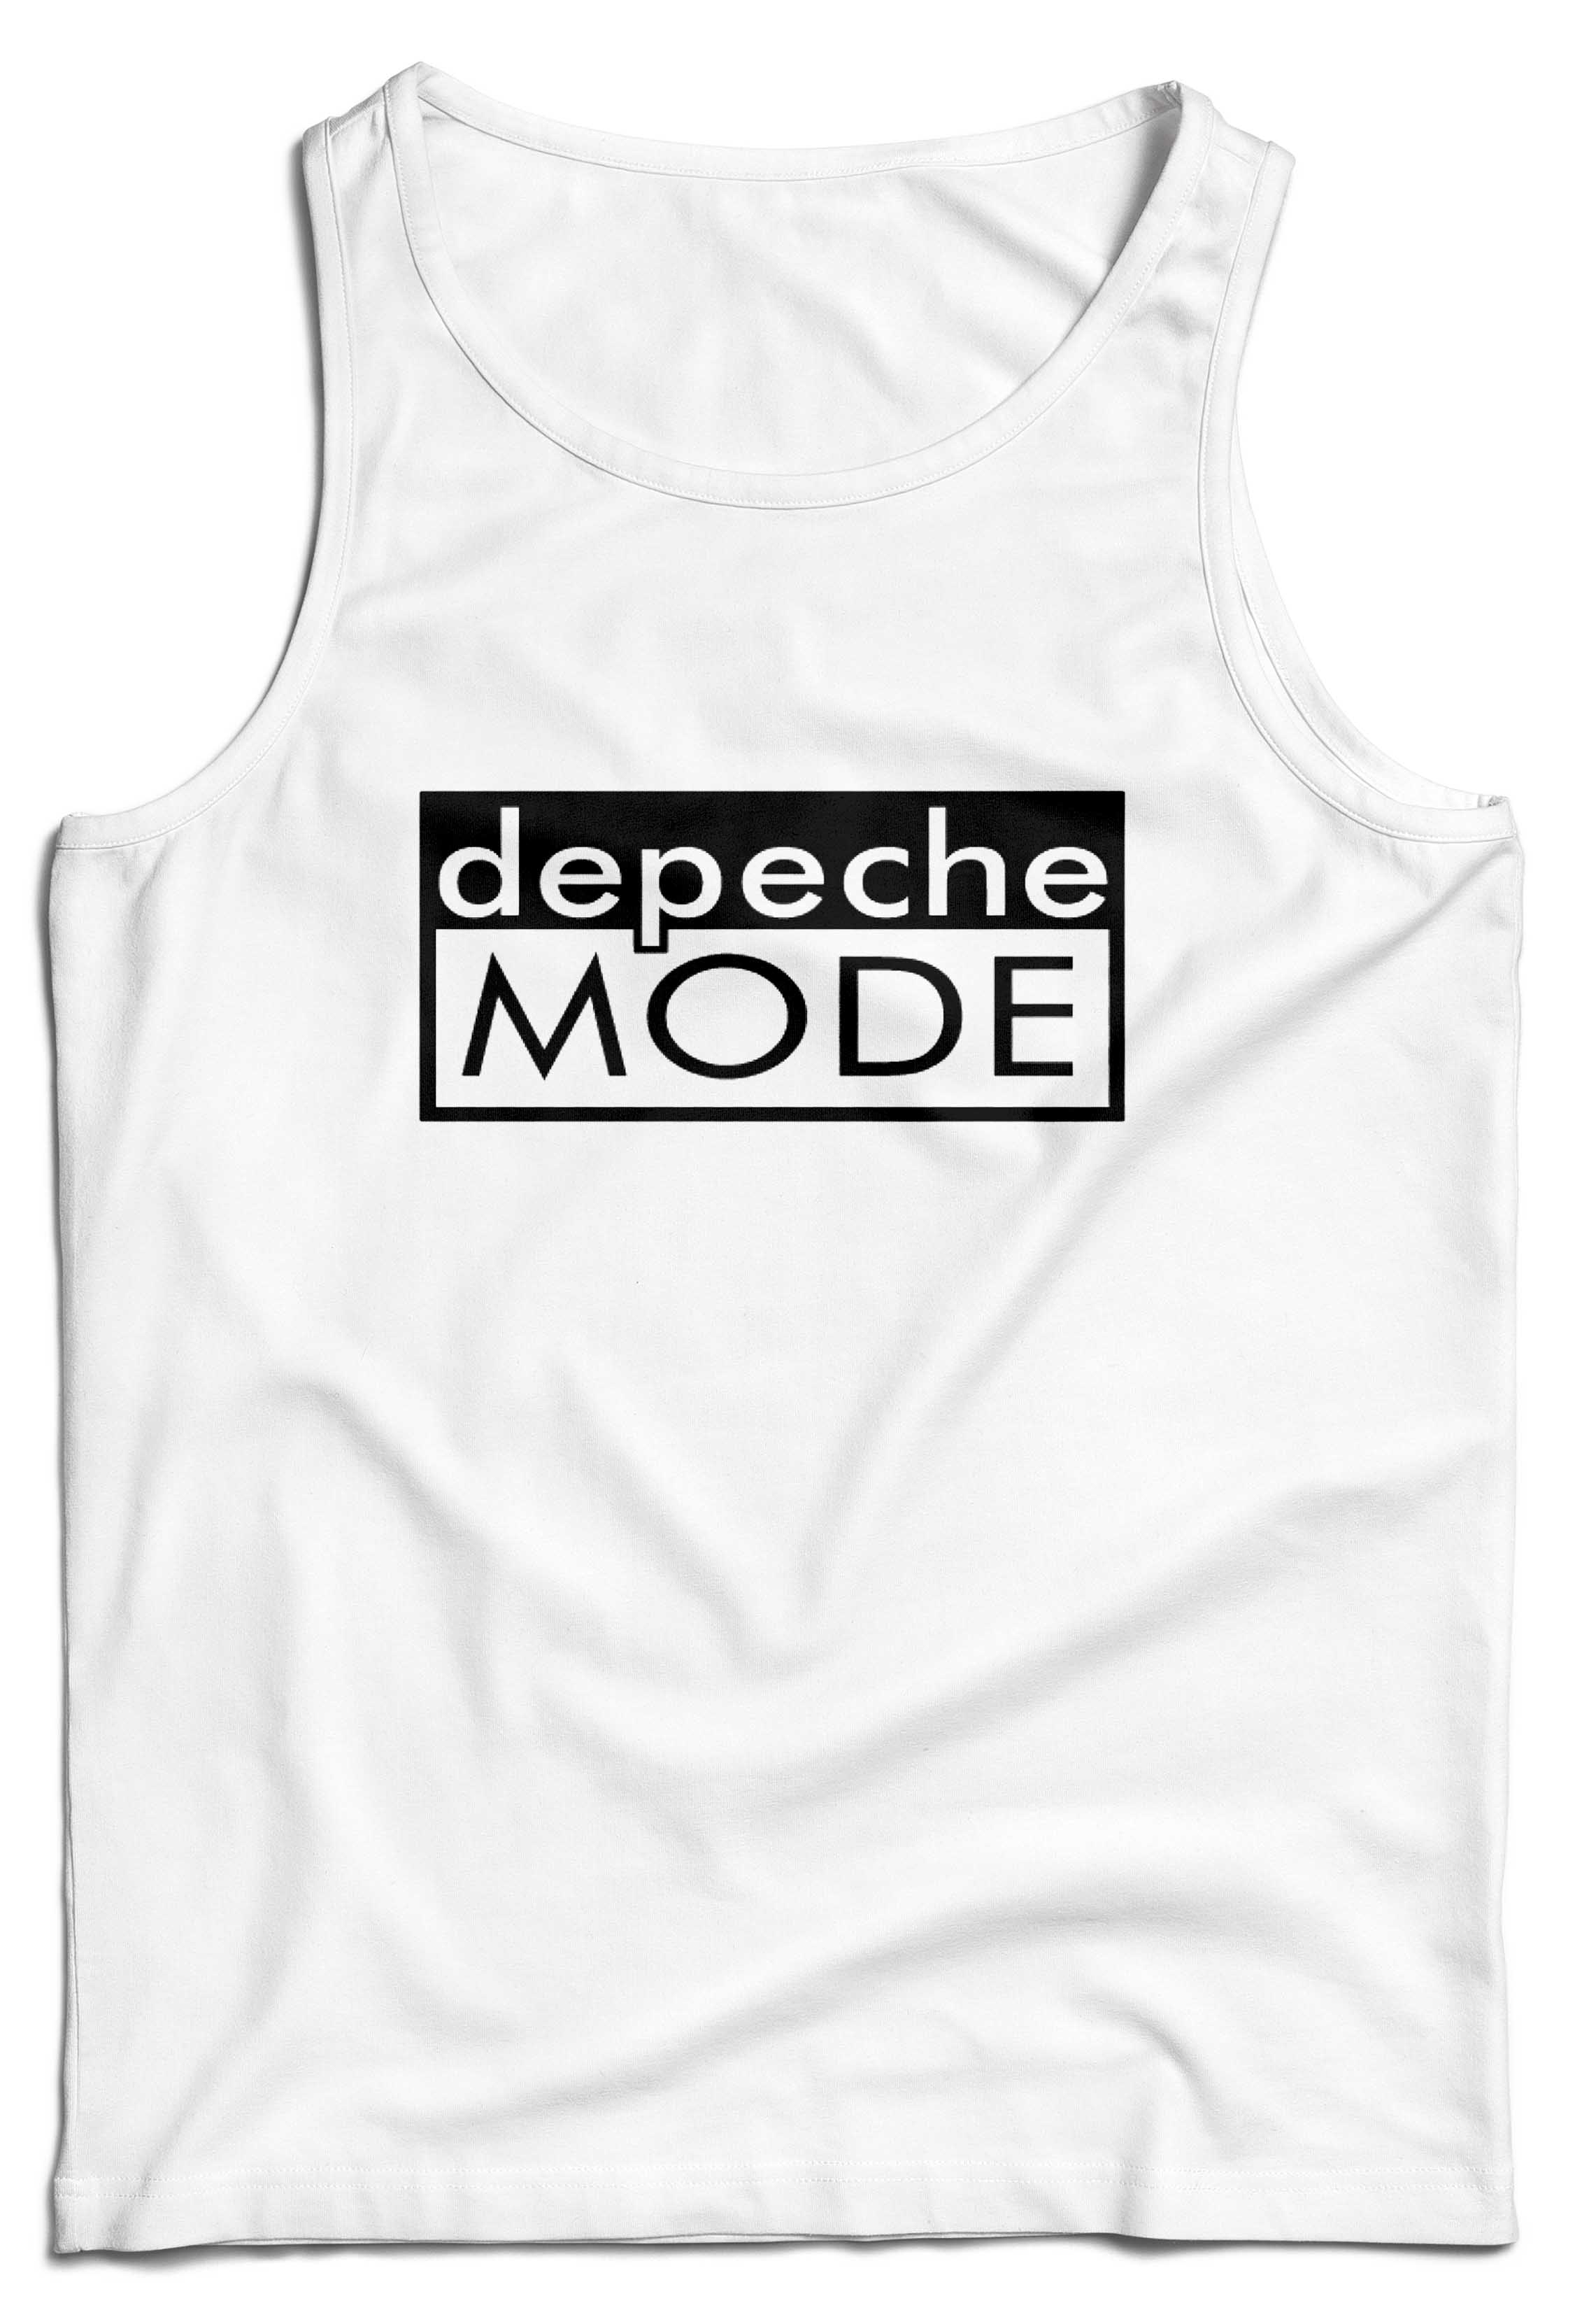 Tielko Depeche Mode Farba: Biela, Veľkosť: S, Výber Farby: Pánske